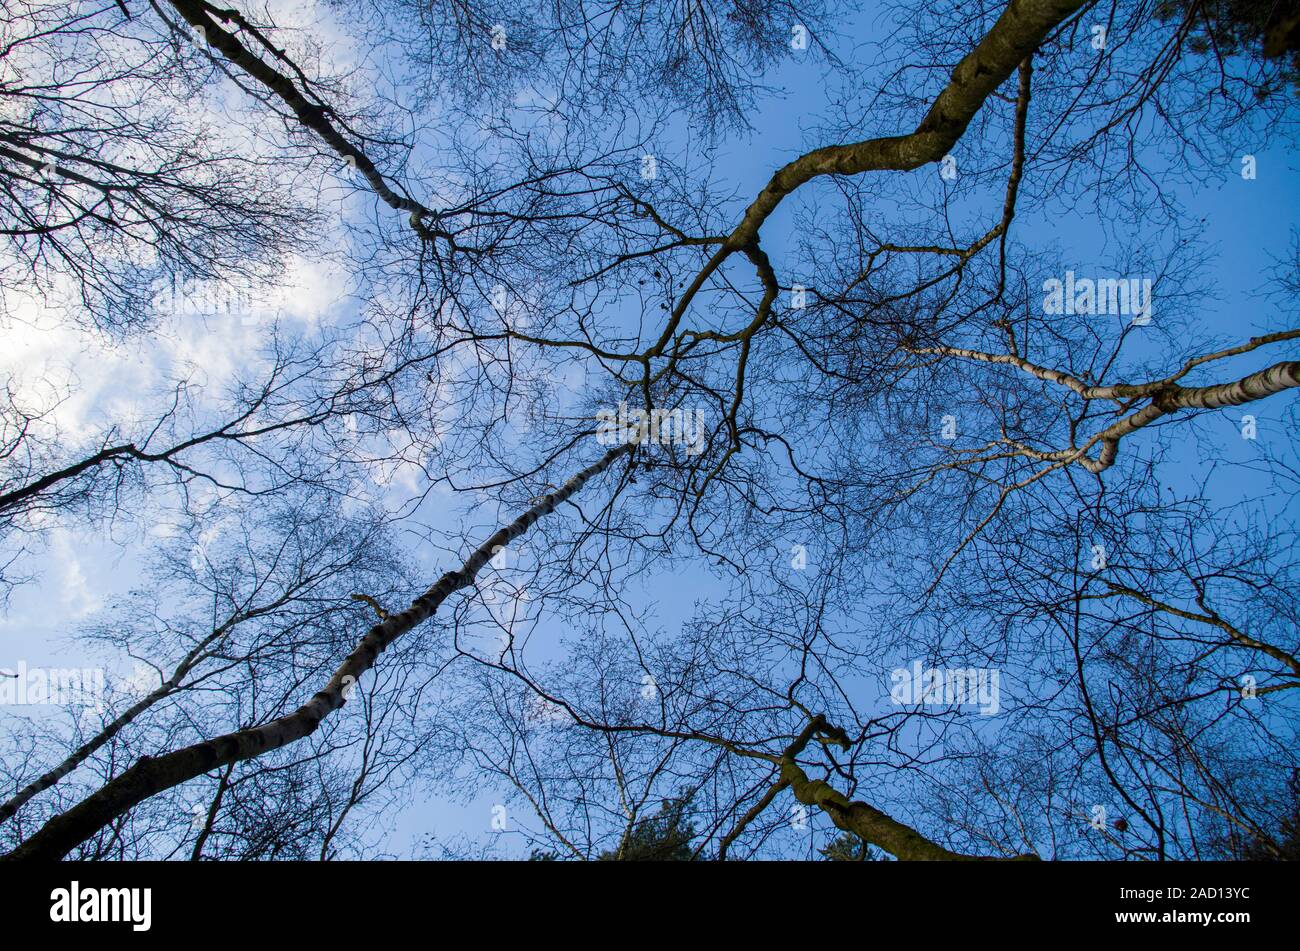 Blick in die Bäume ohne Blätter, Birke Wald. Blauen Himmel im Hintergrund Zweige ohne Blätter, Herbst und Winter Stimmung. Stockfoto